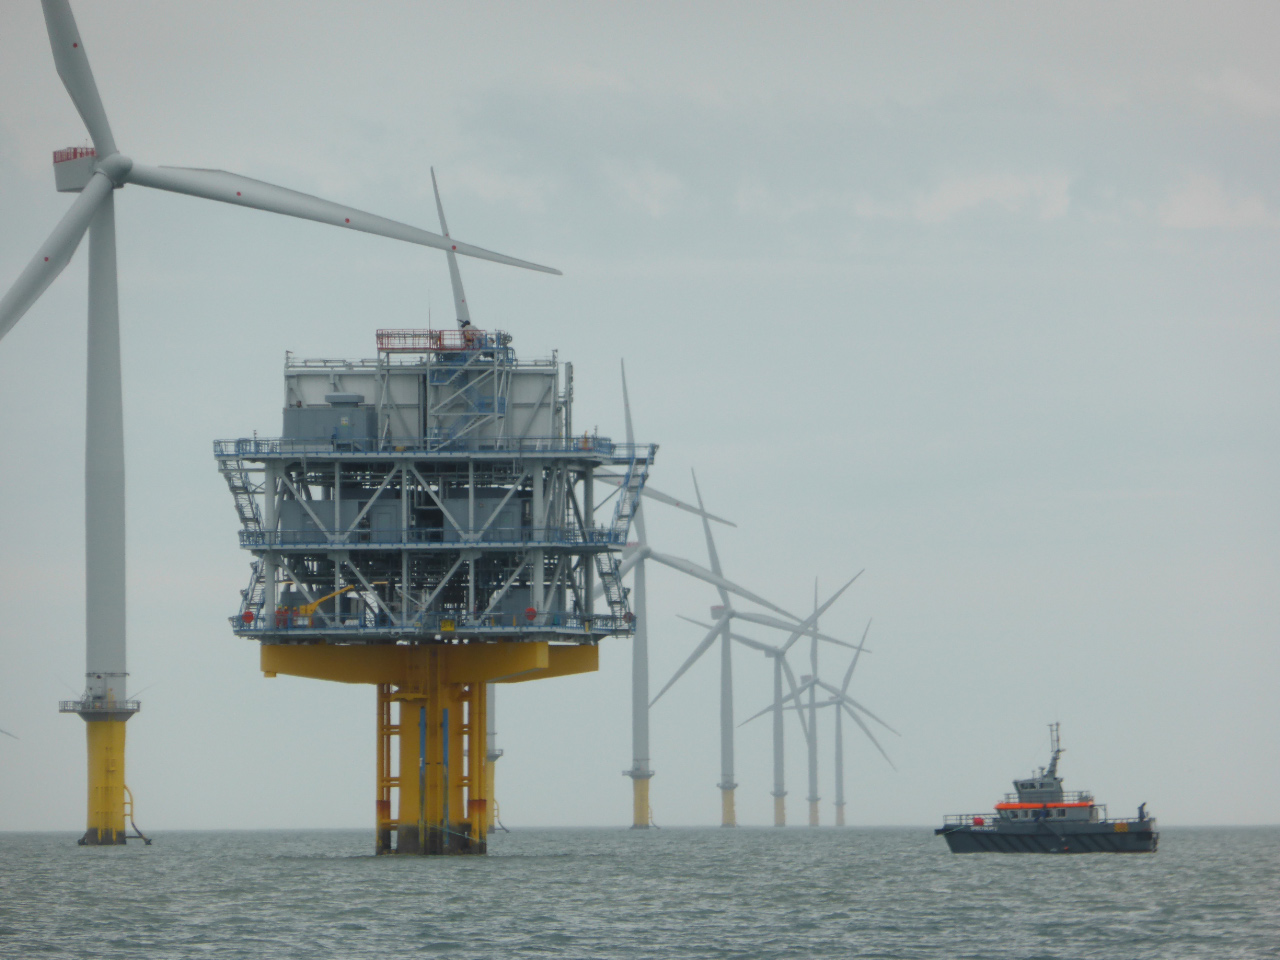 London array offshore wind farm